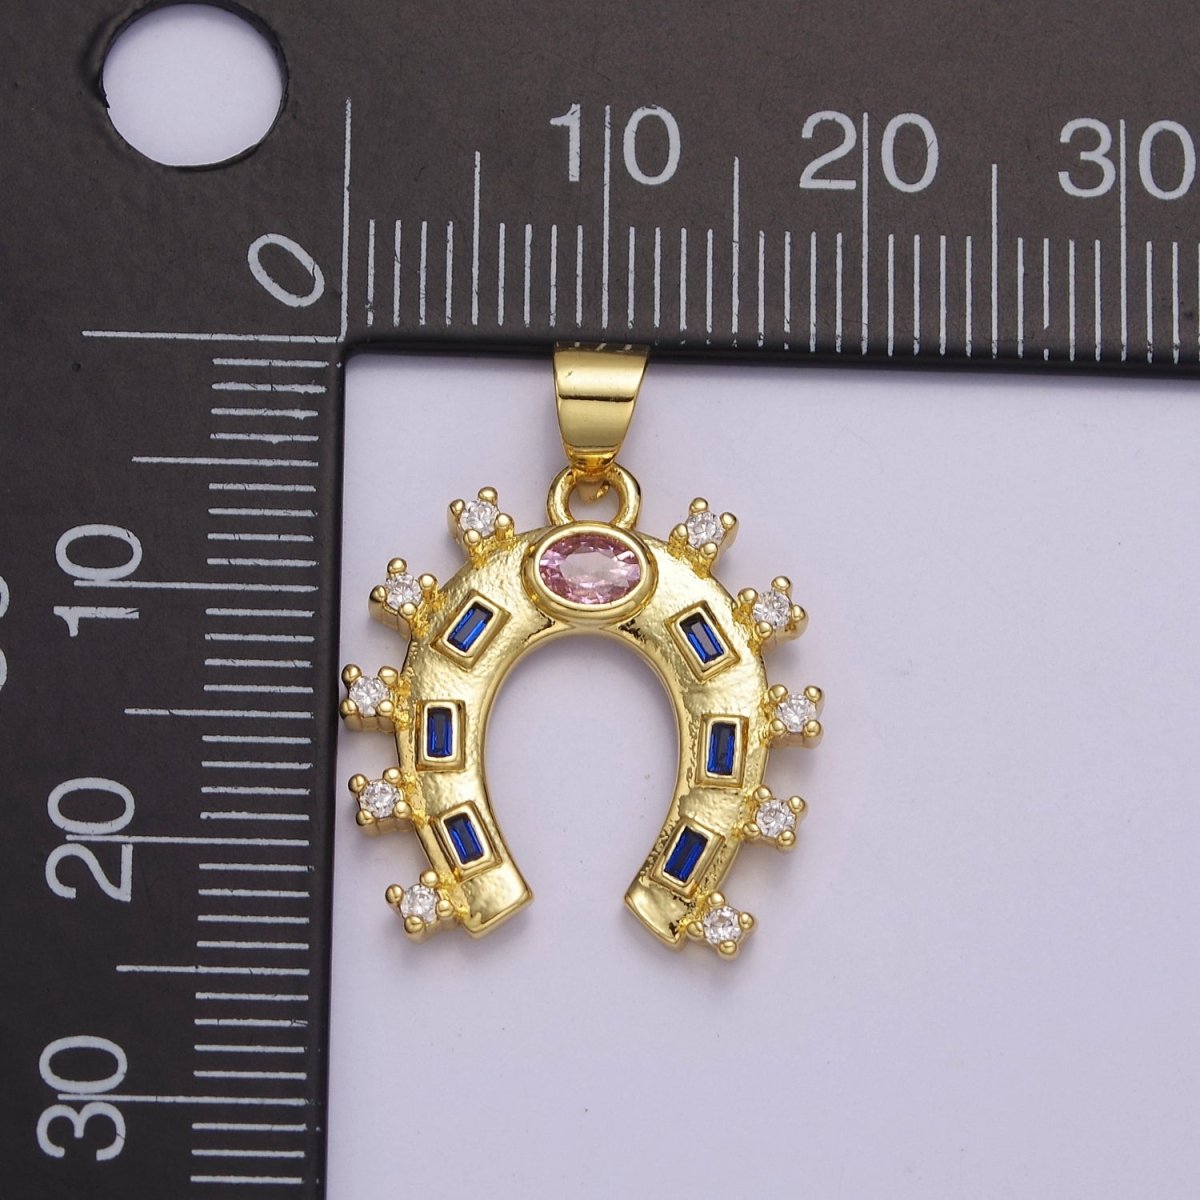 Gold Filled Horseshoe Charm Luck Horseshoe Pendant Necklace Bracelet Mini Horseshoe Pendant Lucky Jewelry Inspired J-427 - DLUXCA